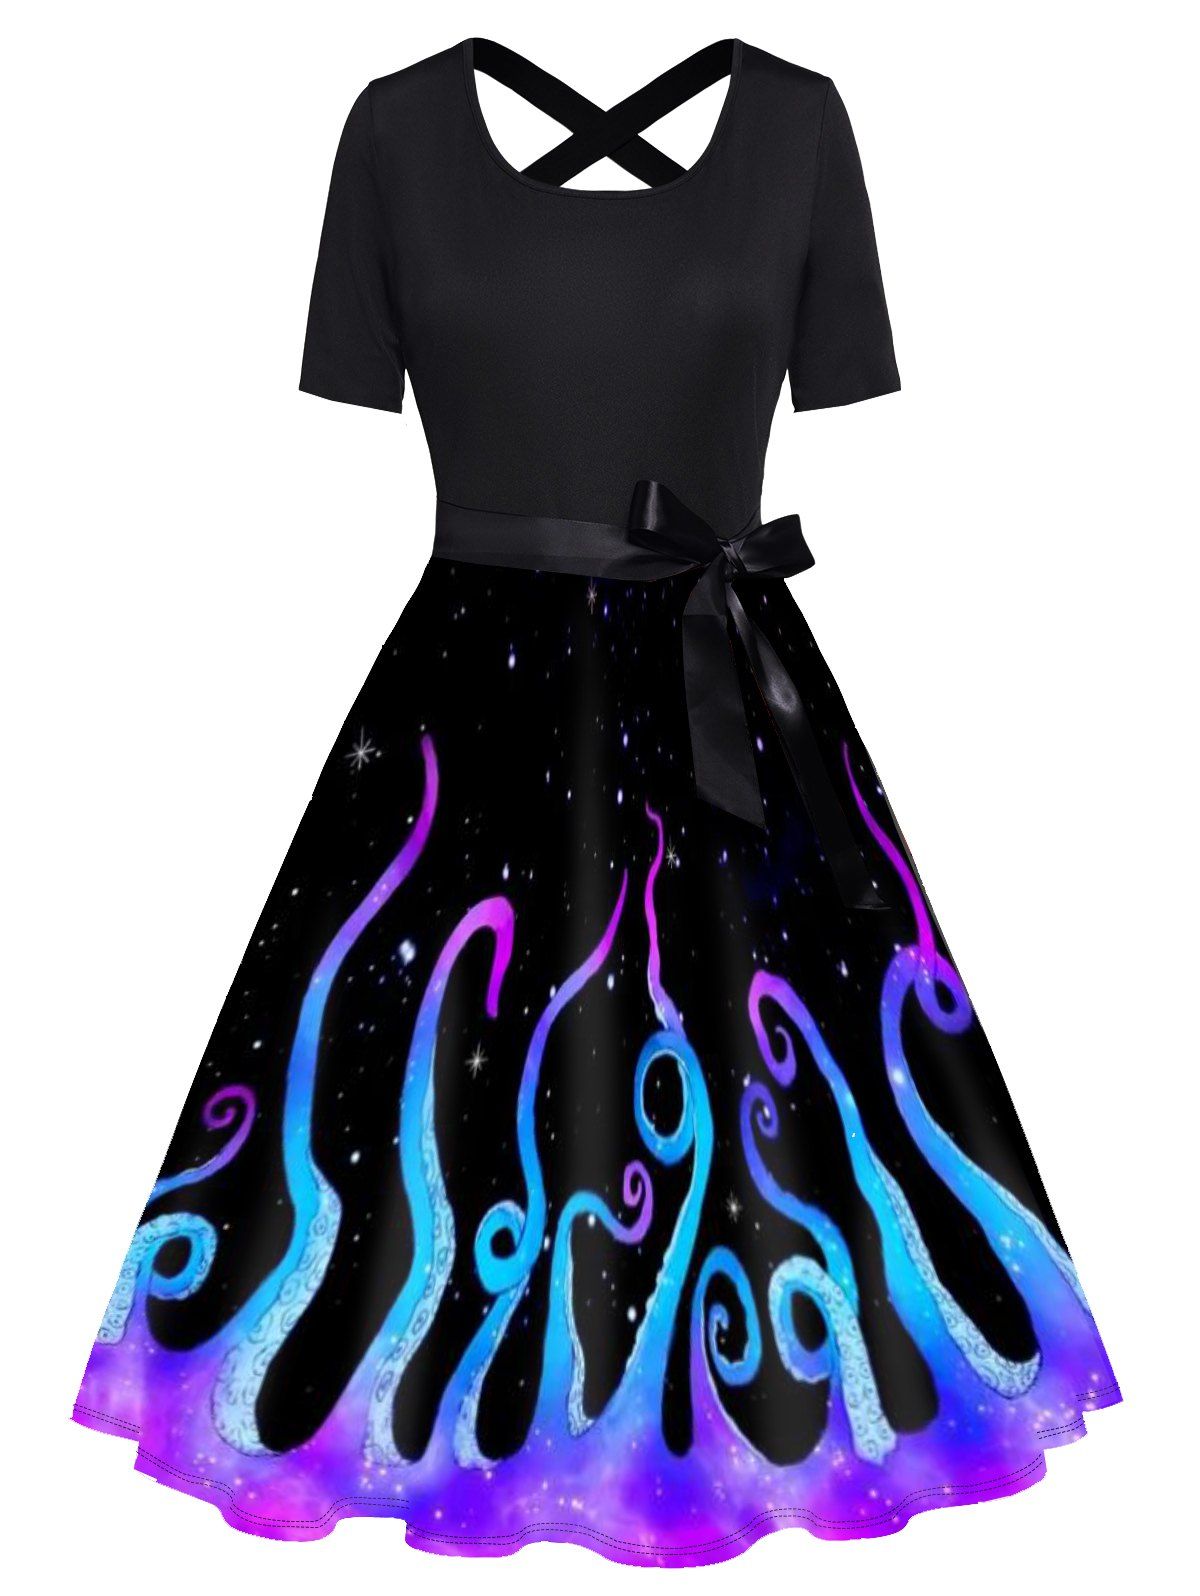 Galaxy Octopus Print Short Sleeve Dress Bowknot Cross High Waist A Line Dress - BLACK S